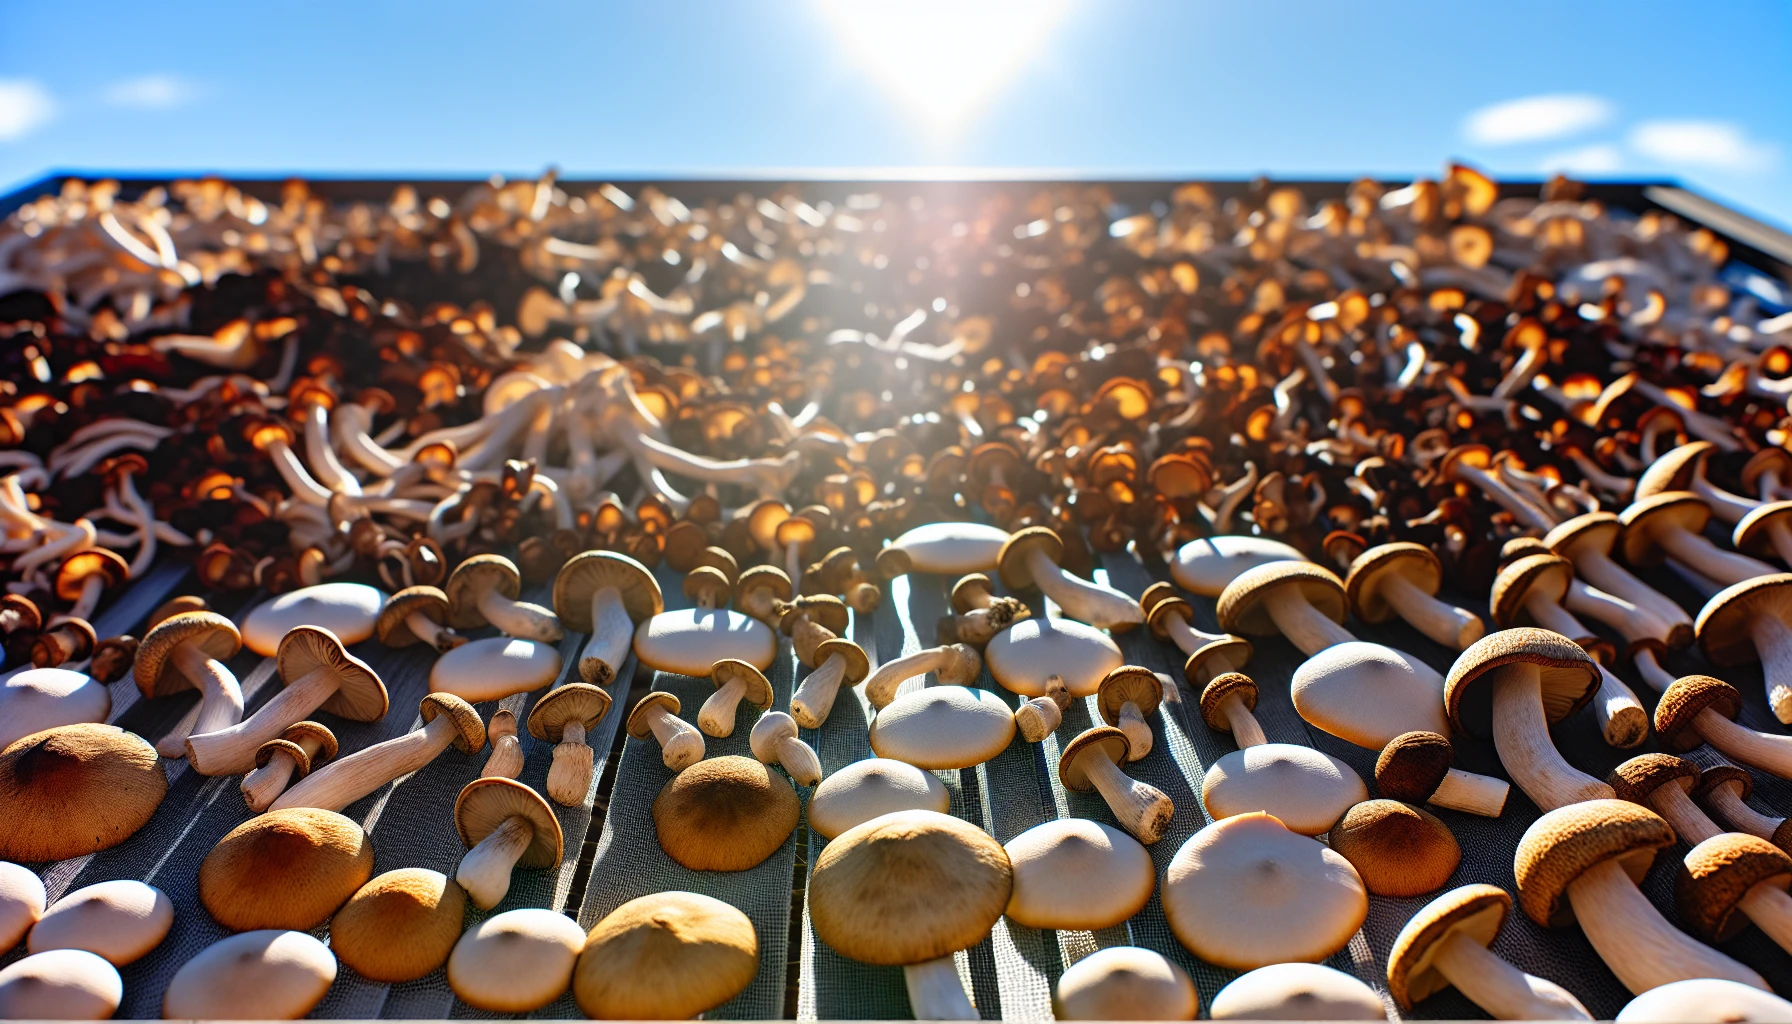 Sun-drying mushrooms outdoors